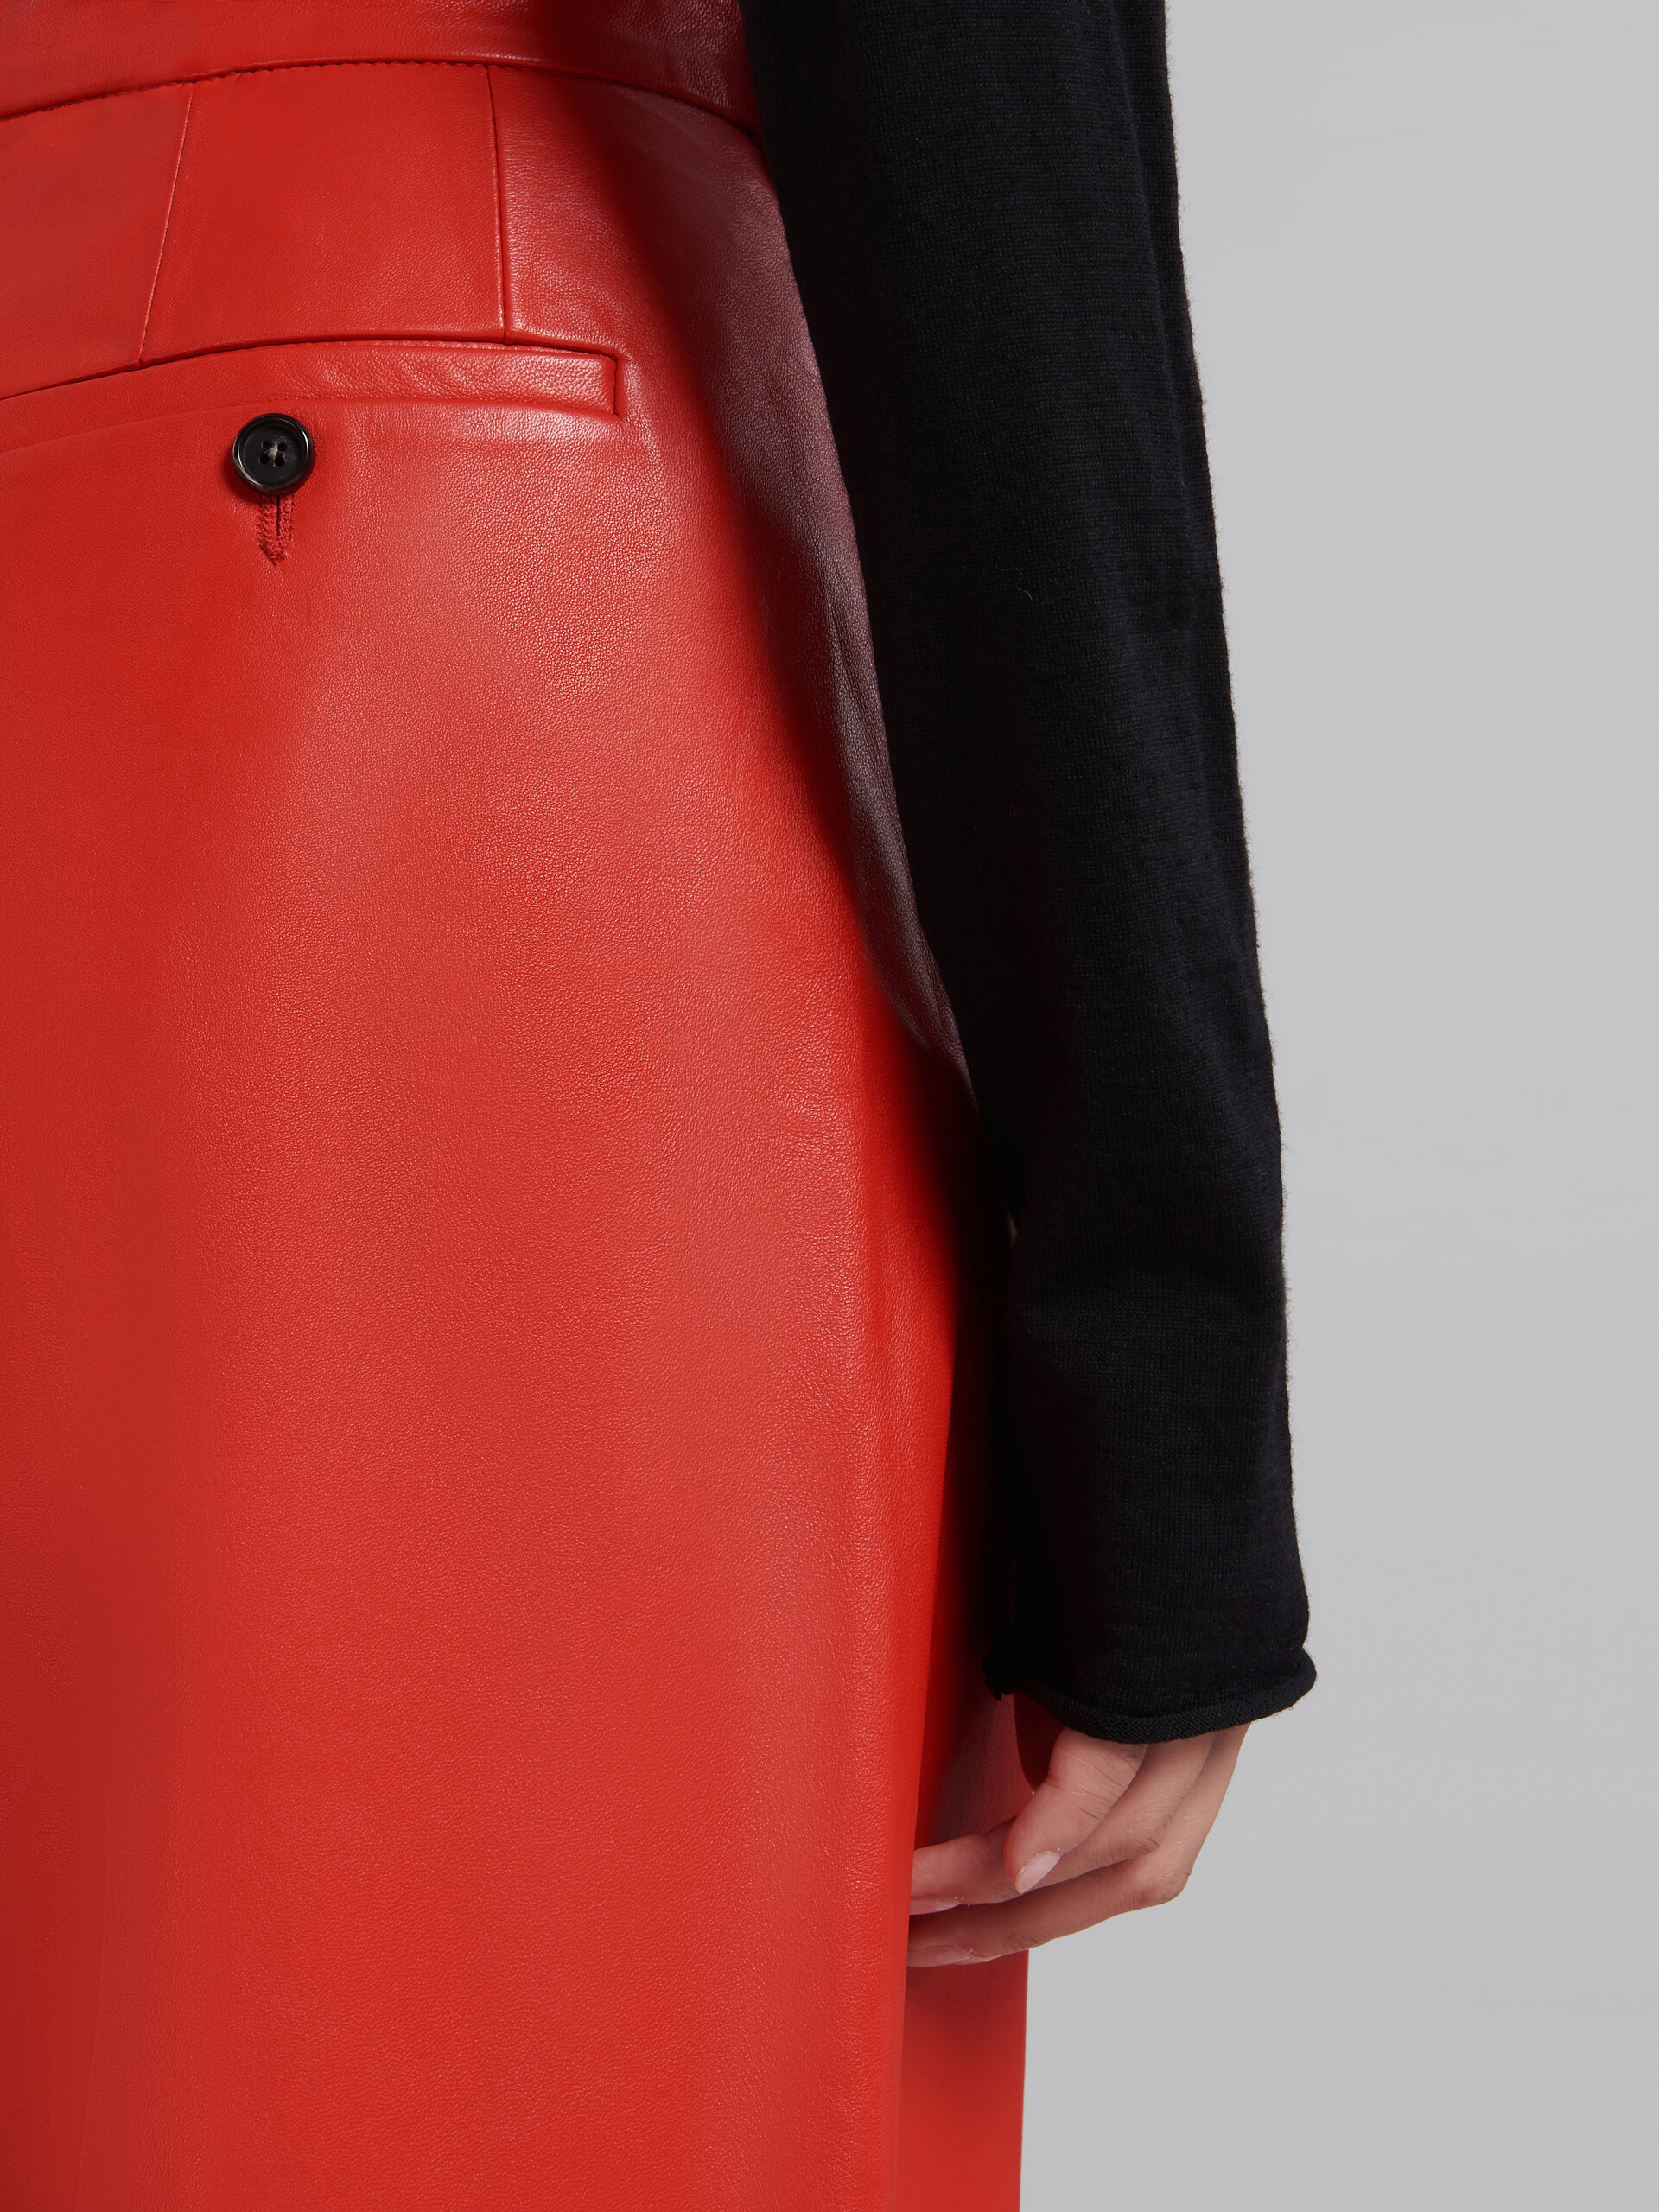 Pantalon ajusté en cuir nappa rouge - Pantalons - Image 4